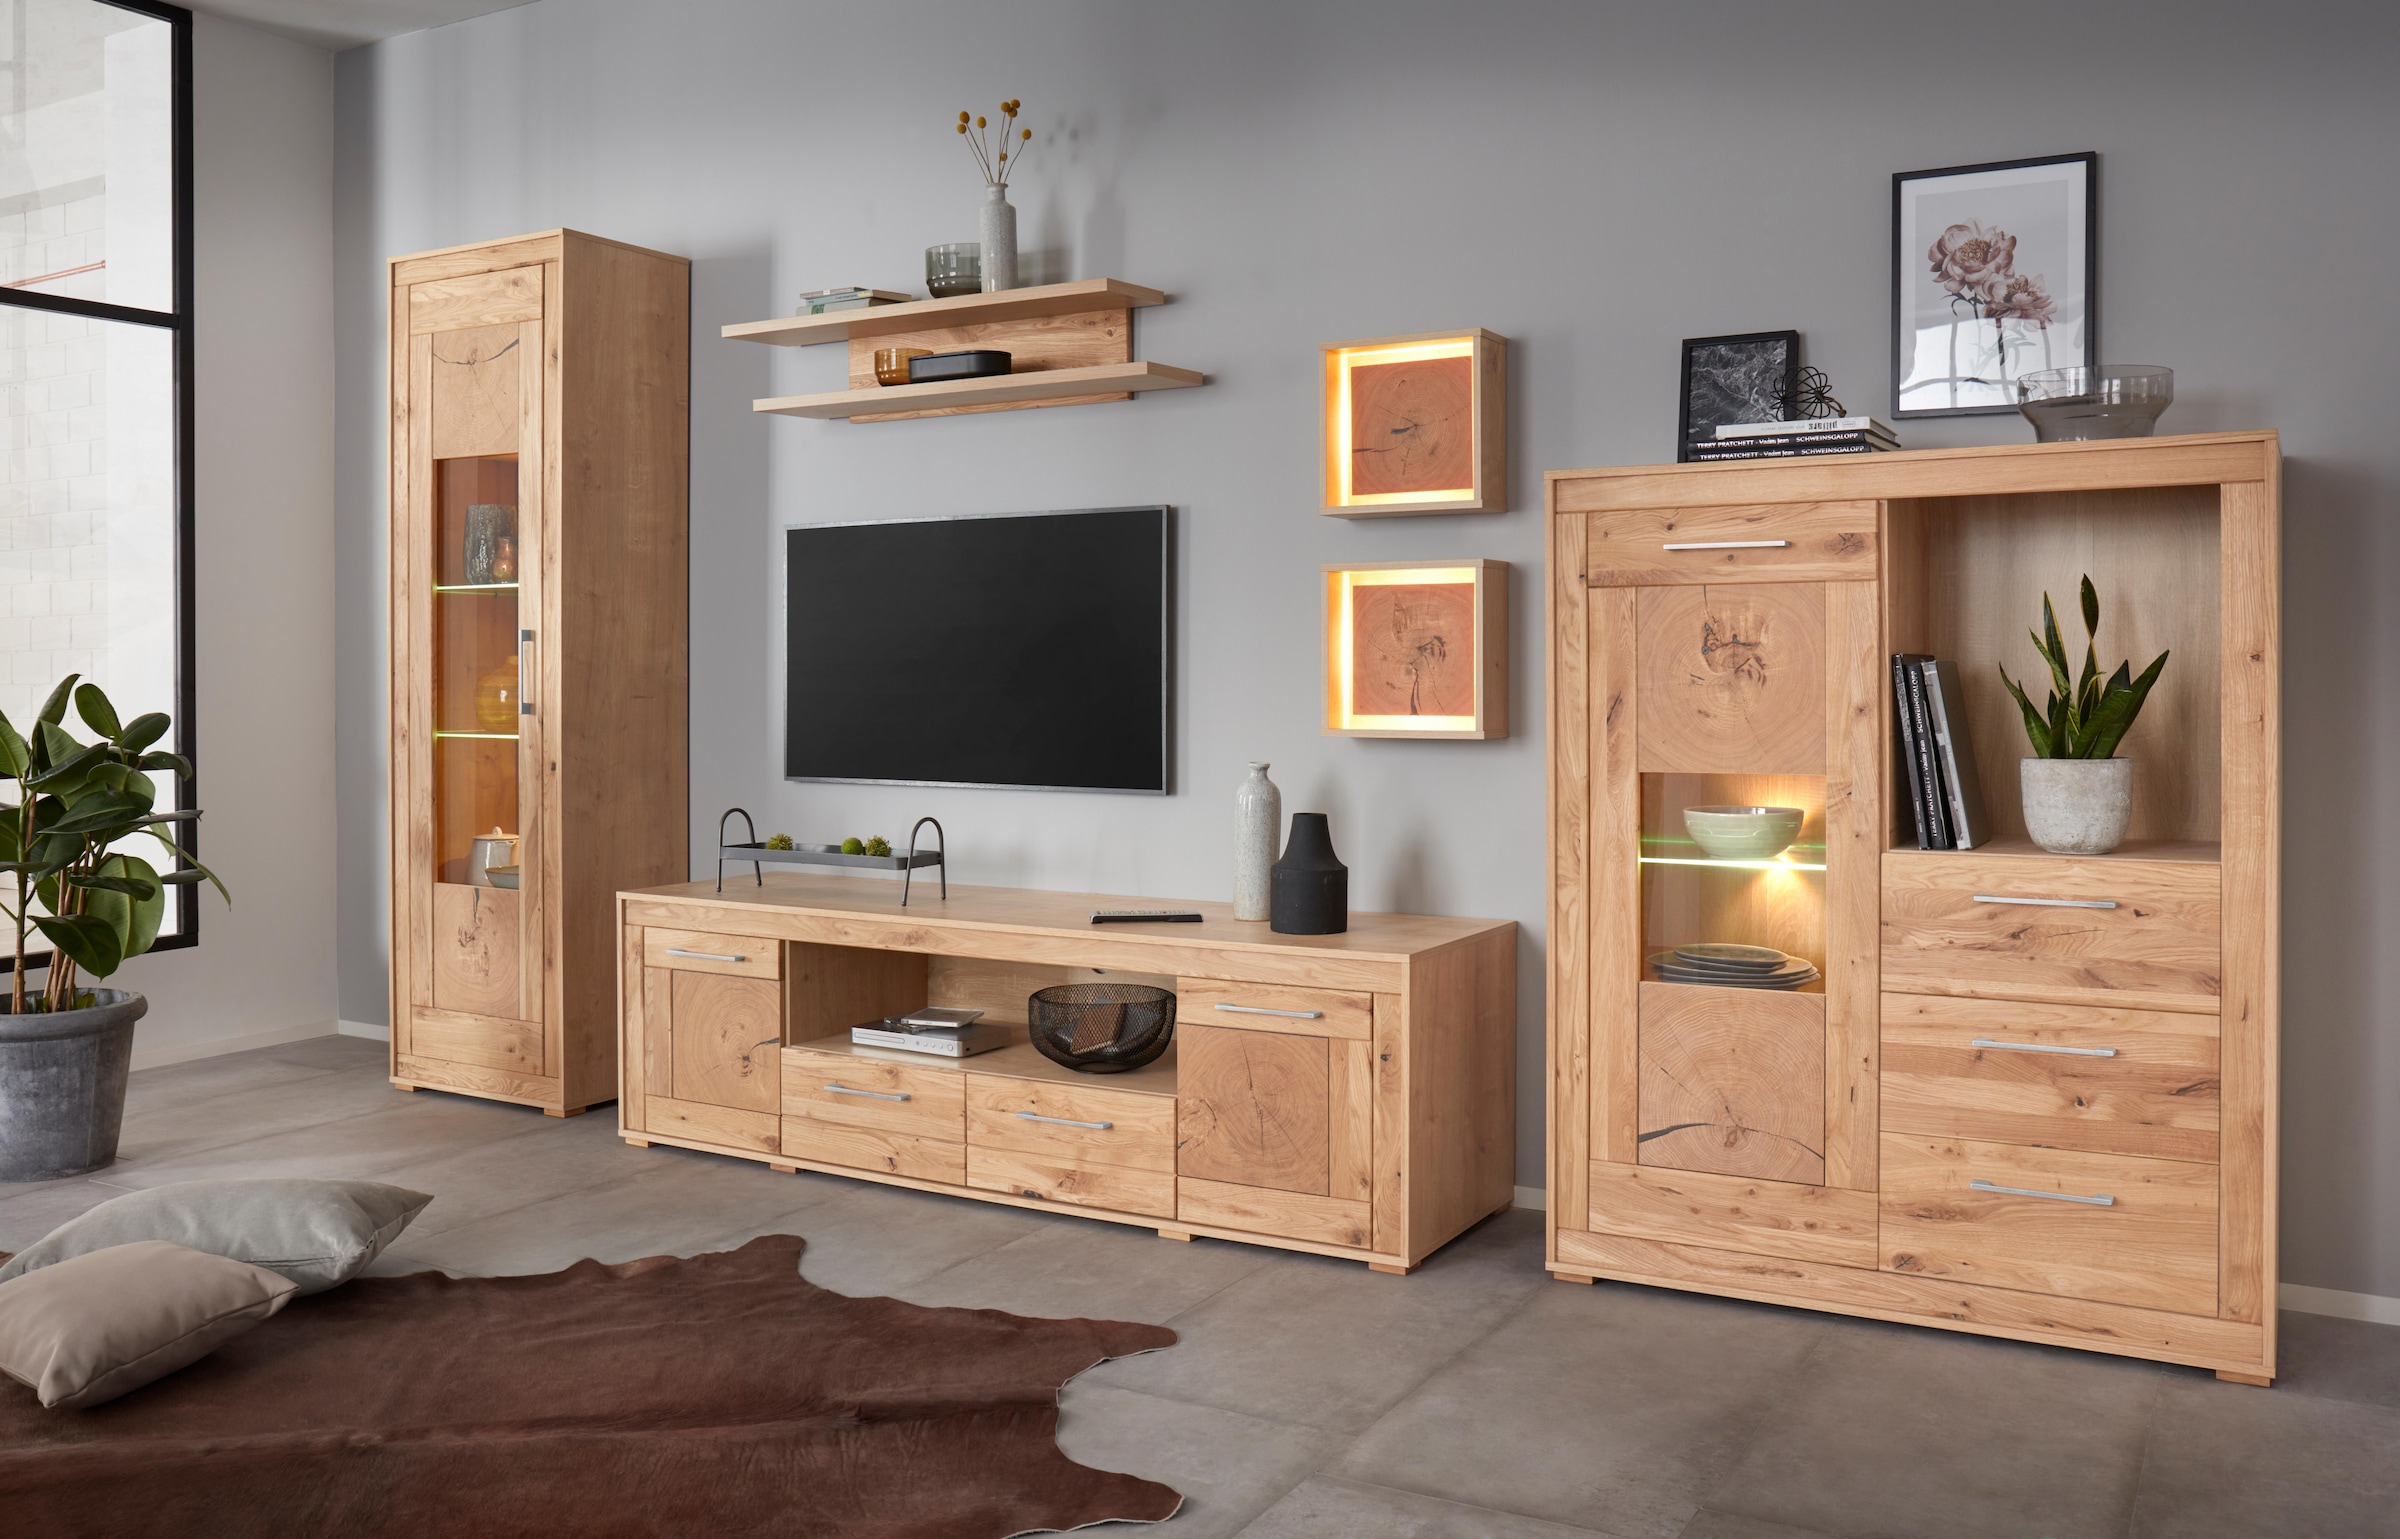 VOGL online kaufen Möbelfabrik Wandboard